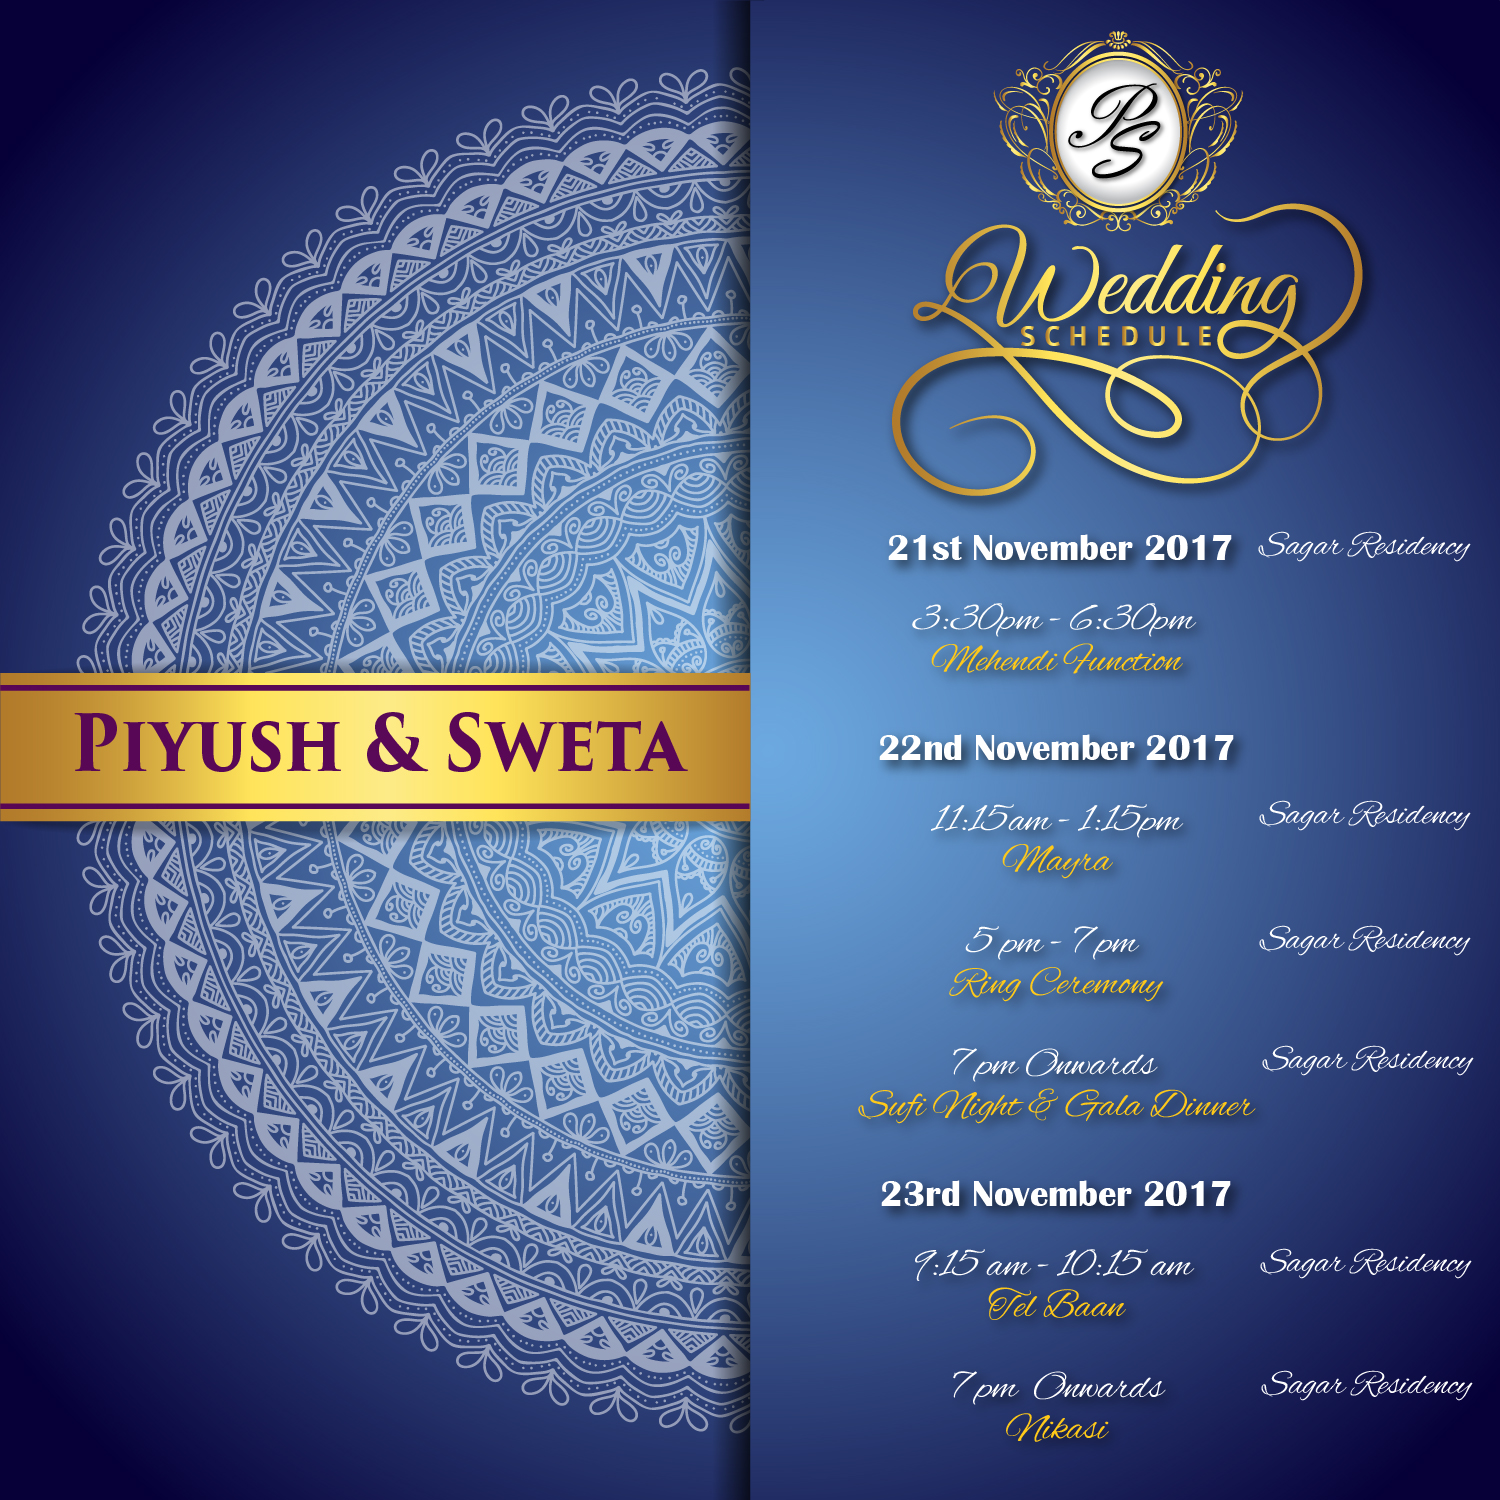 Piyush_&_Sweta_Itinerary-01-01